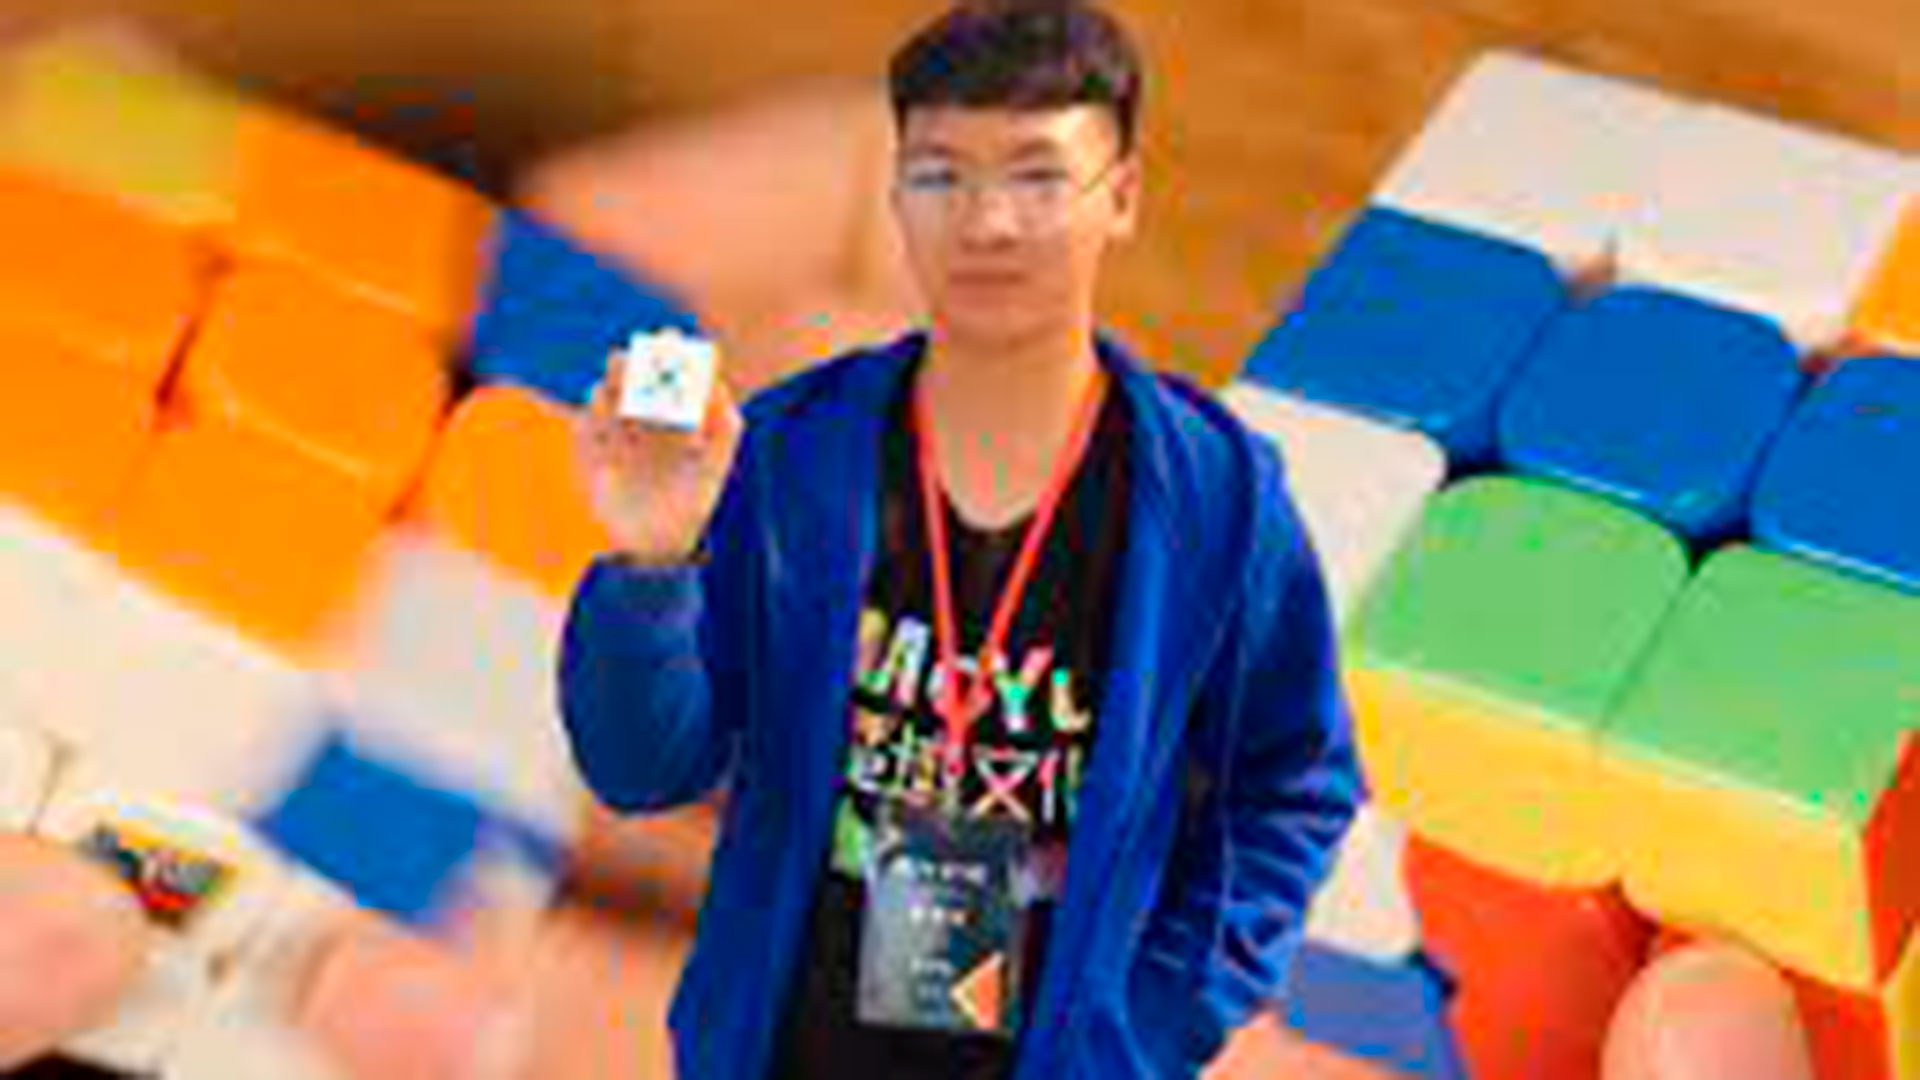 El actual récord del mundial del cubo de Rubik, que viene desde 2018, sigue siendo del chino Yusheng Du. Fue capaz de resolver el cubo de Rubik en 3,47 segundos (Instagram)